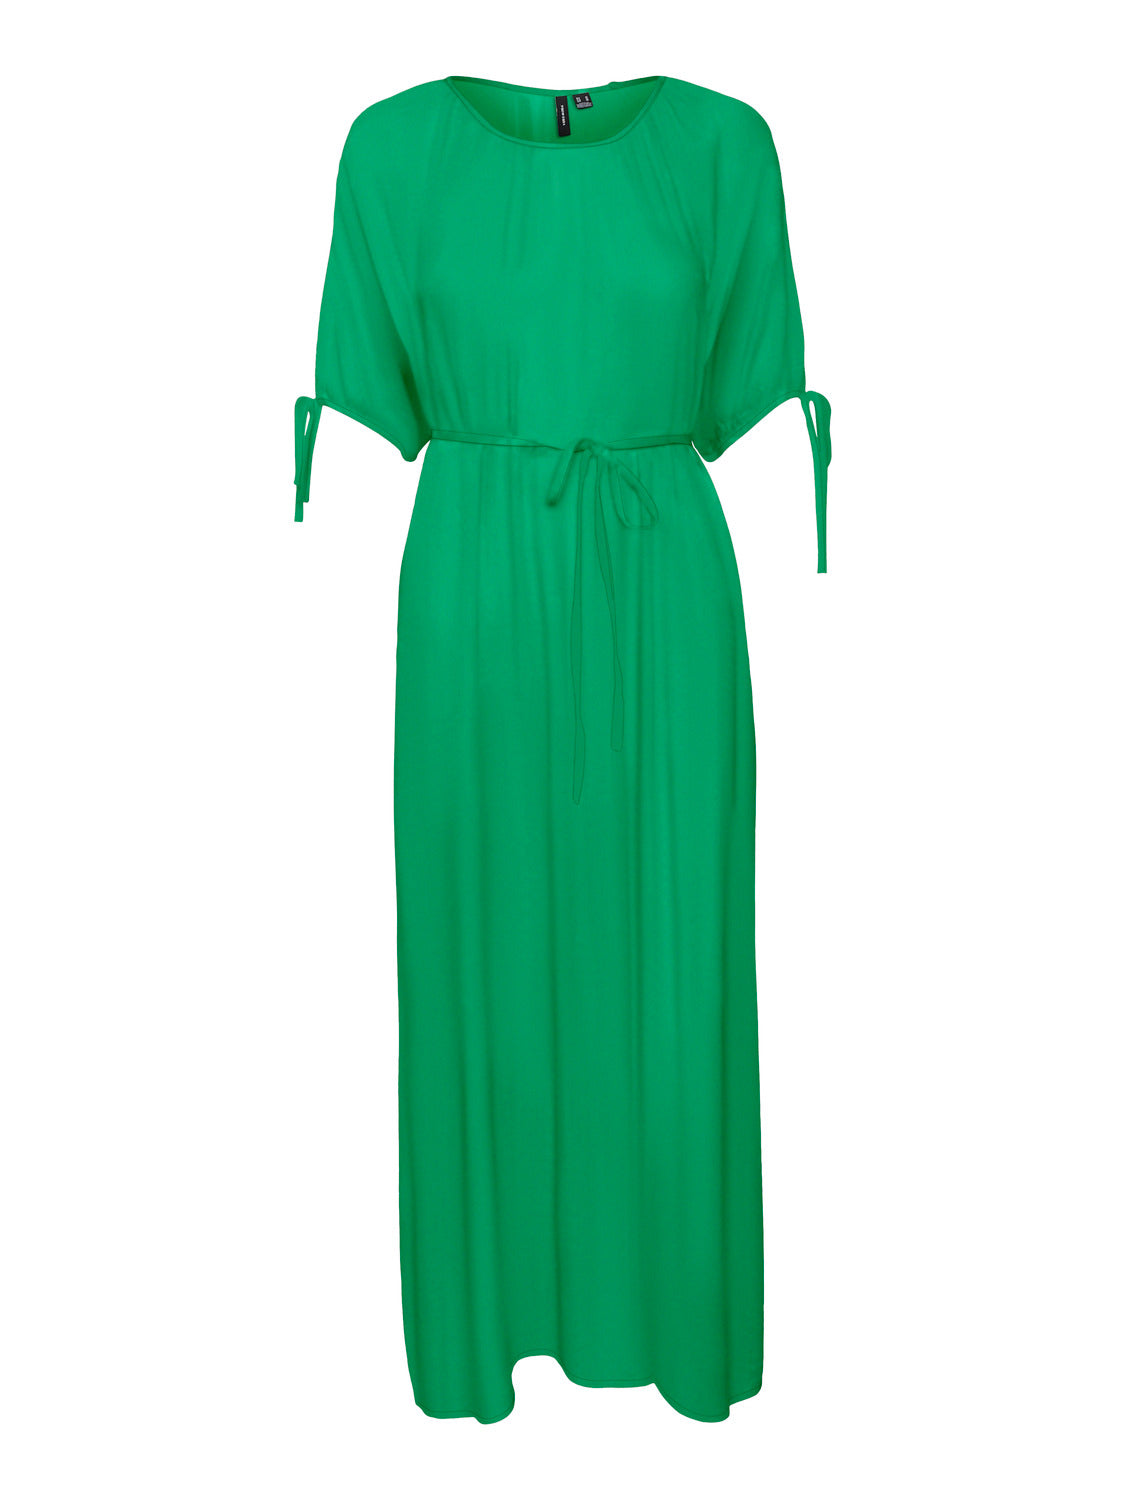 VMMENNY Dress - Bright Green